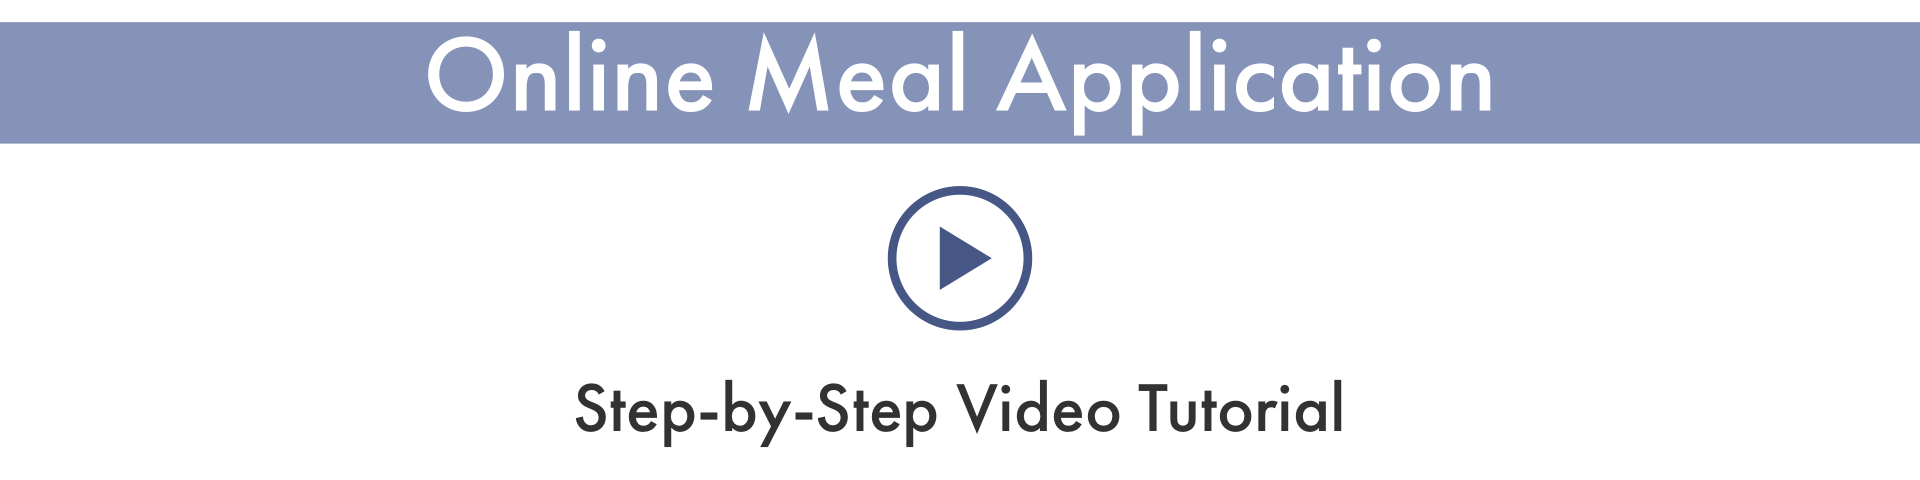 online meal app tutorial